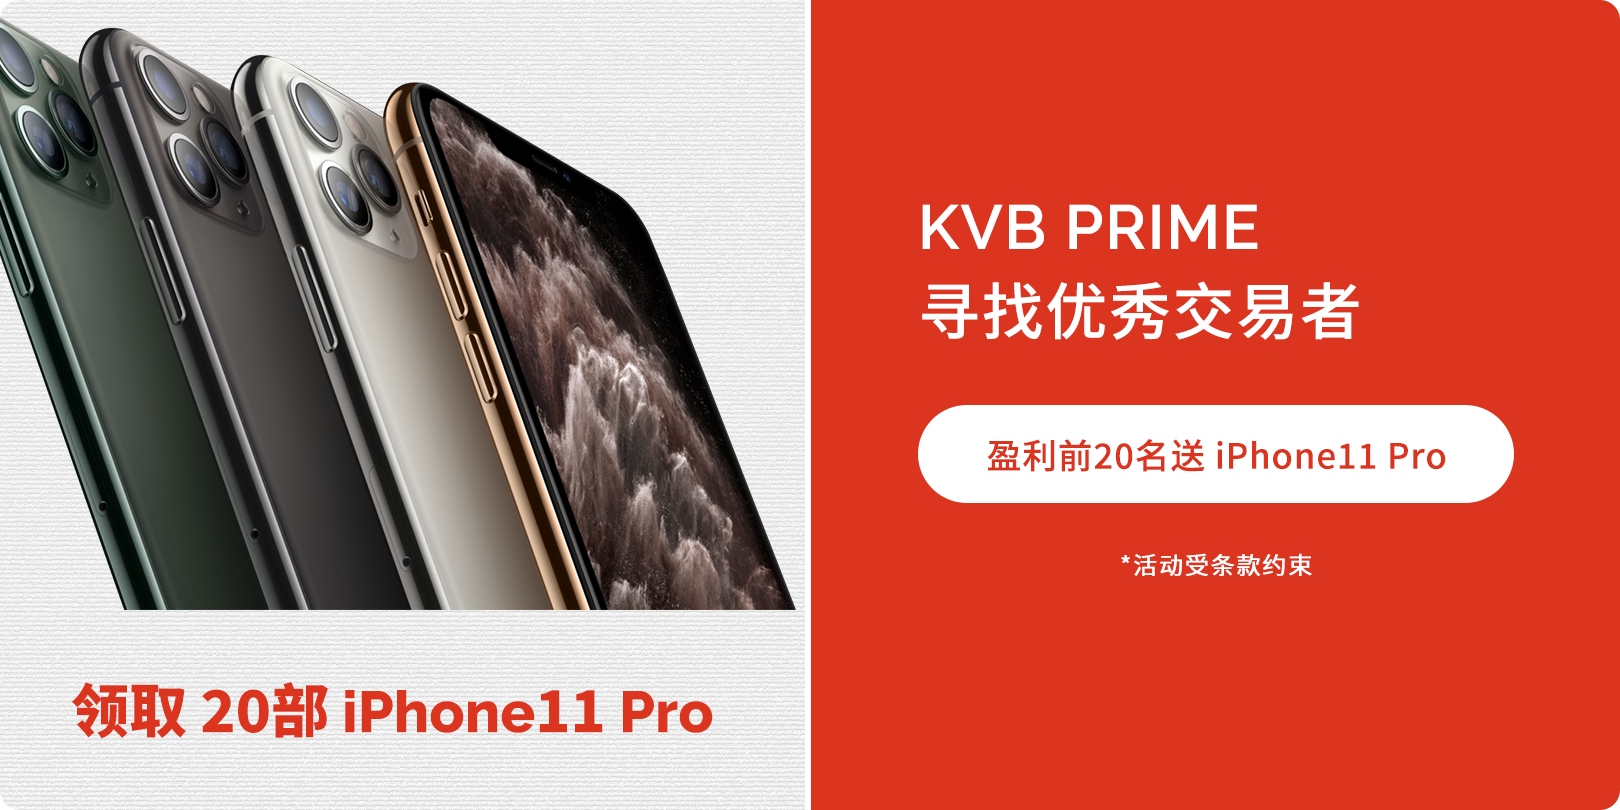 送 IPHONE 11 Pro ……够优秀就来拿……